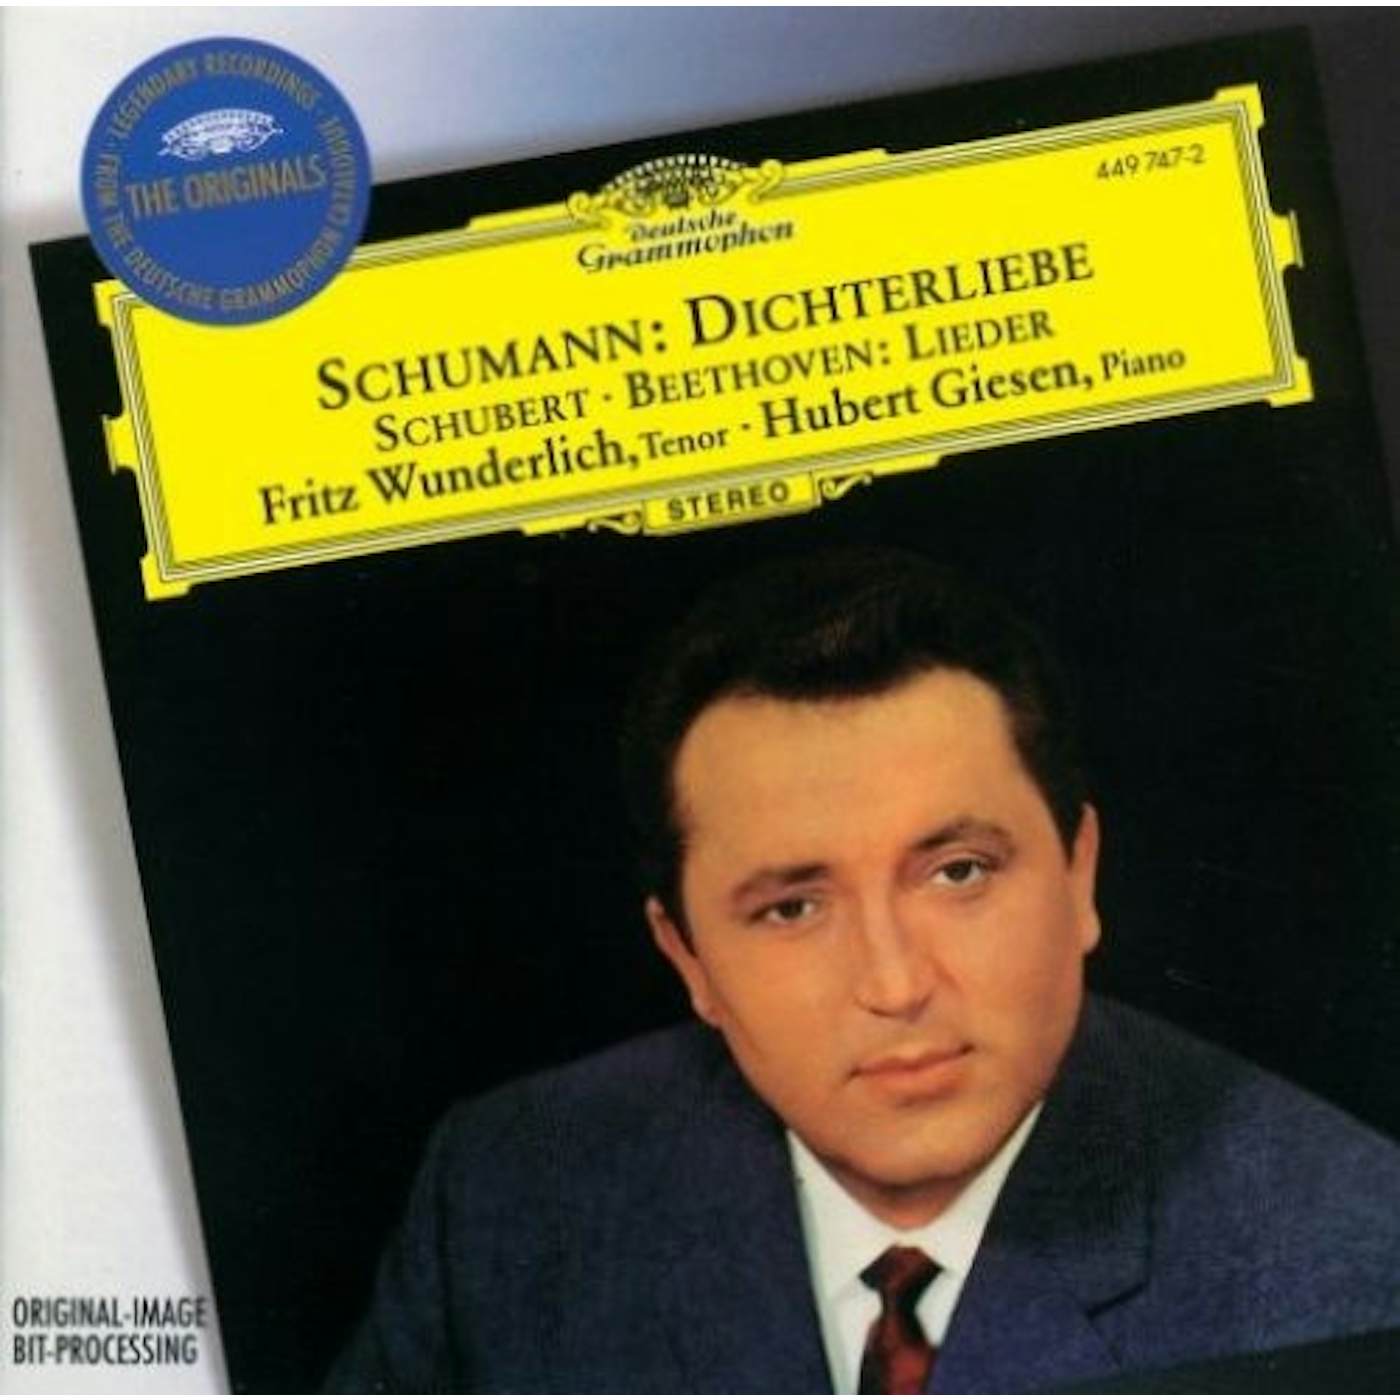 Fritz Wunderlich SCHUMANN: DICHTERLIEBE/SCHUBERT: LIEDE CD